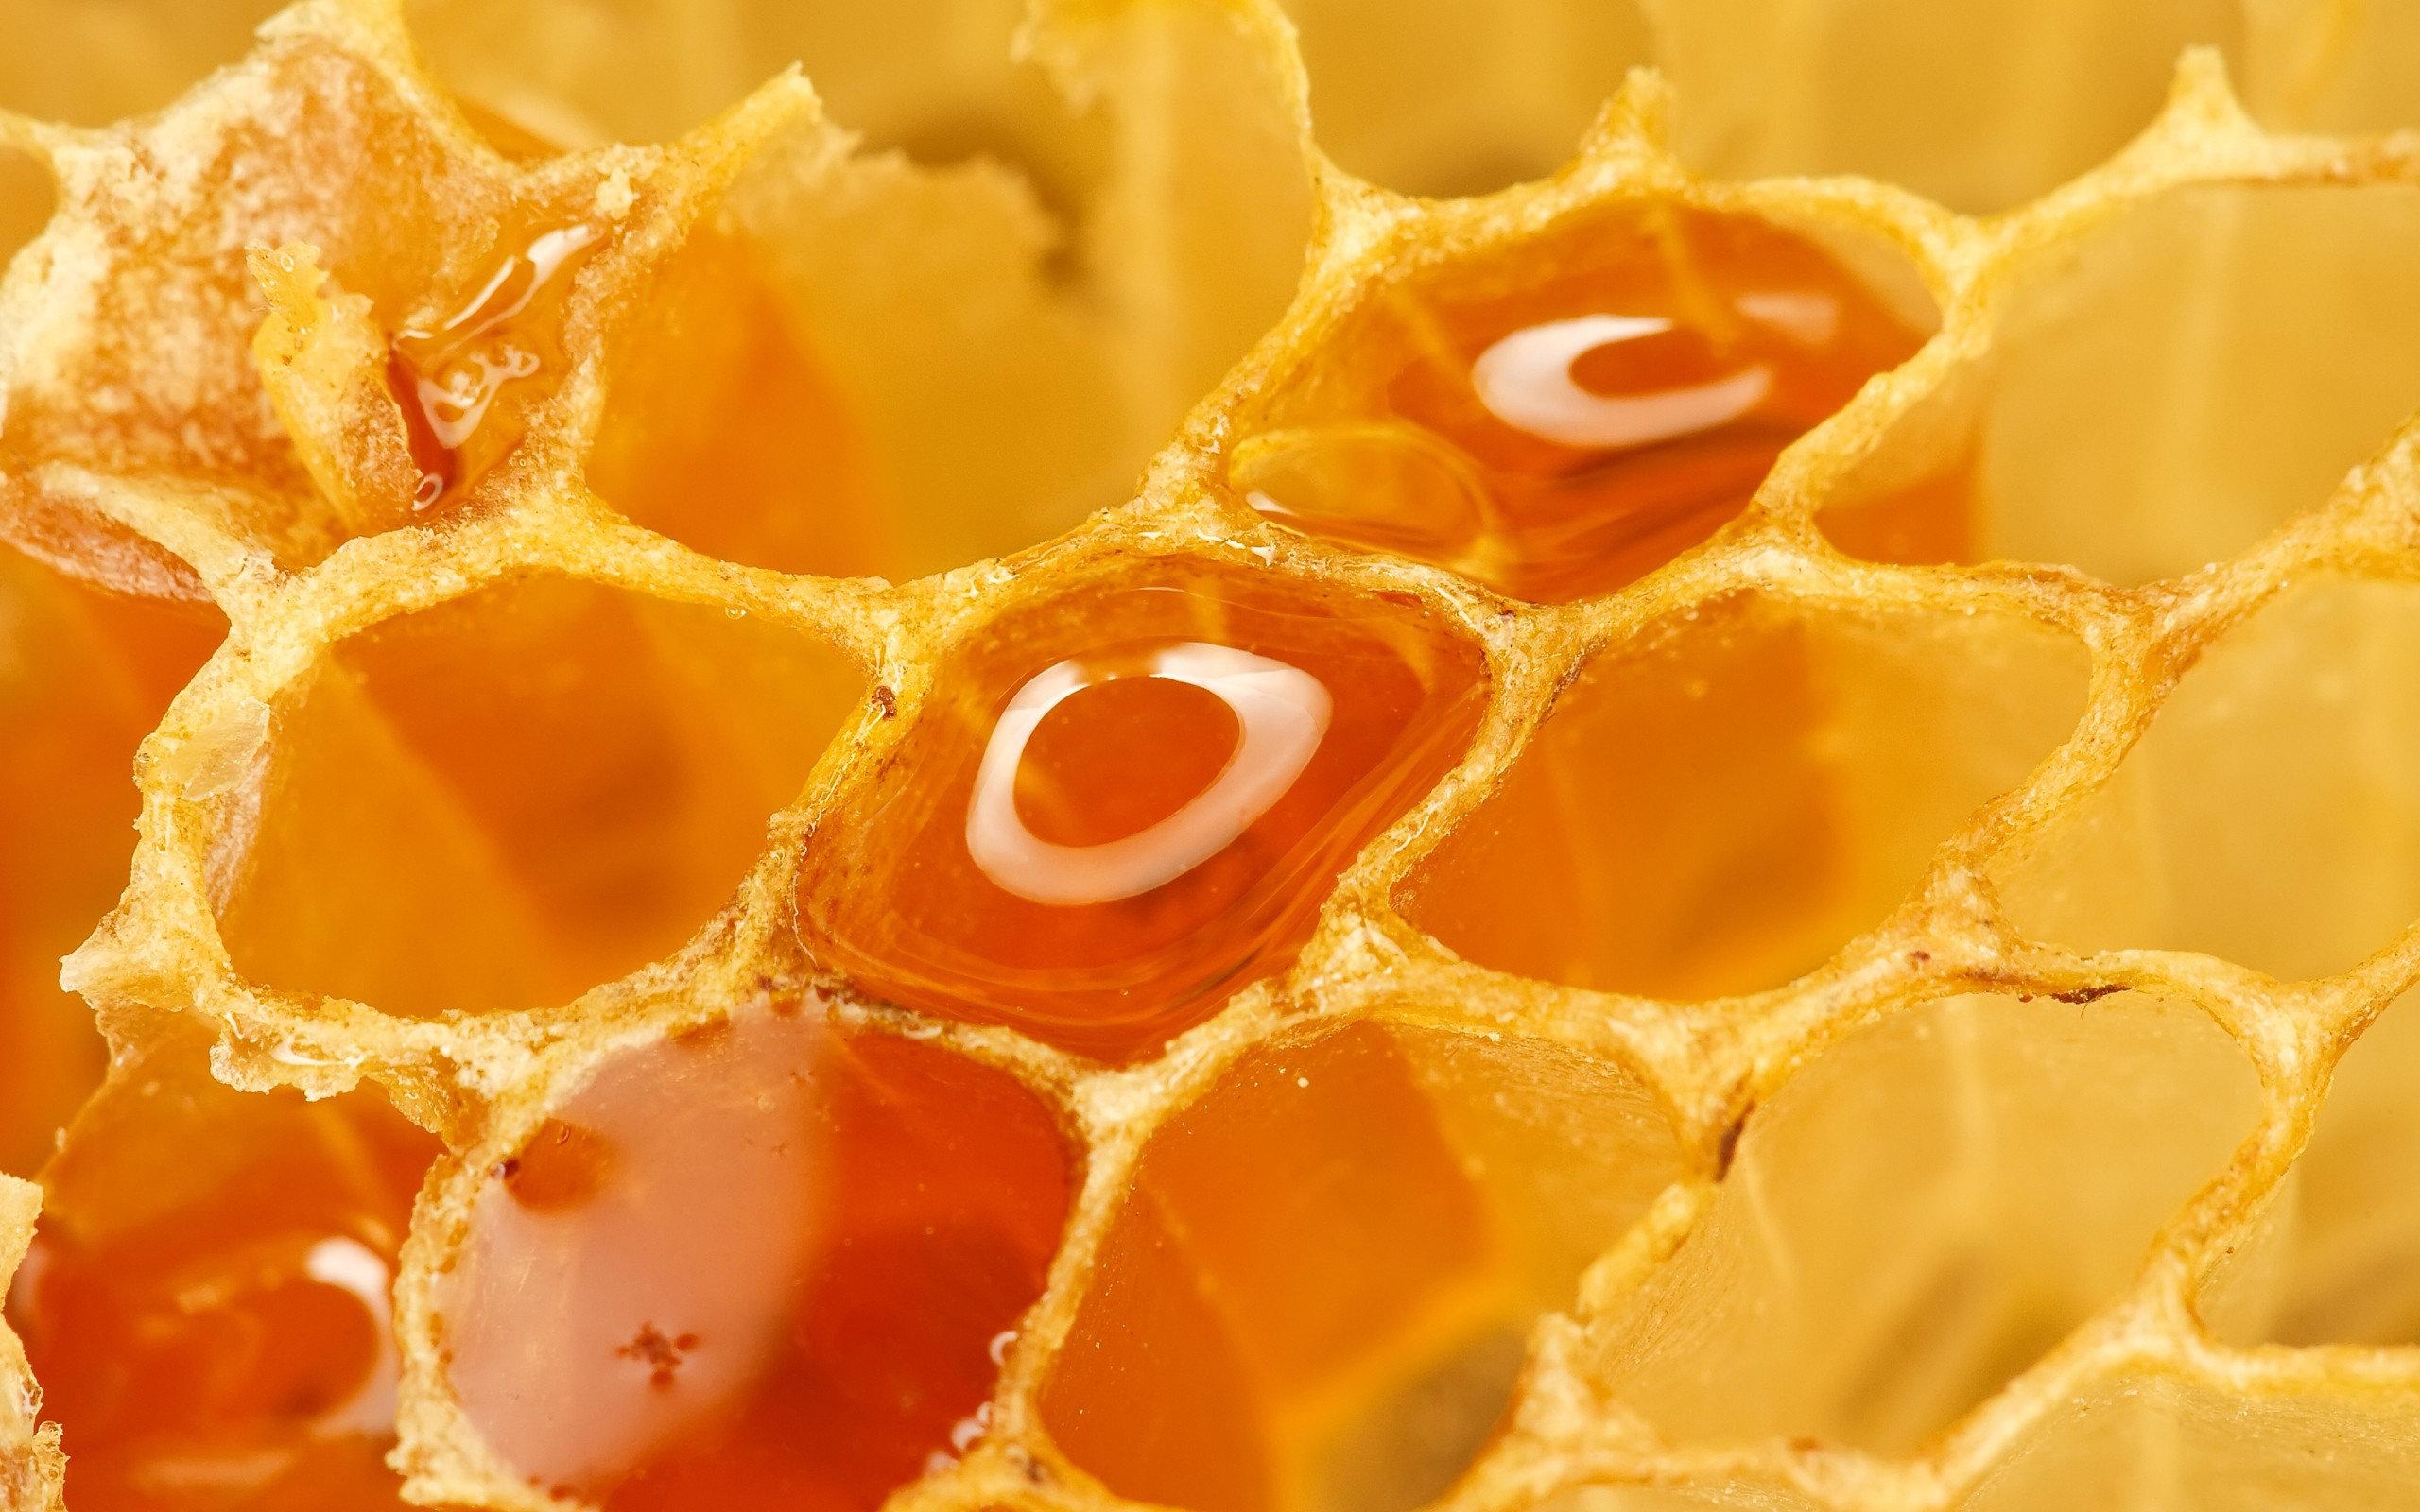 Honey wallpaper HD for desktop background